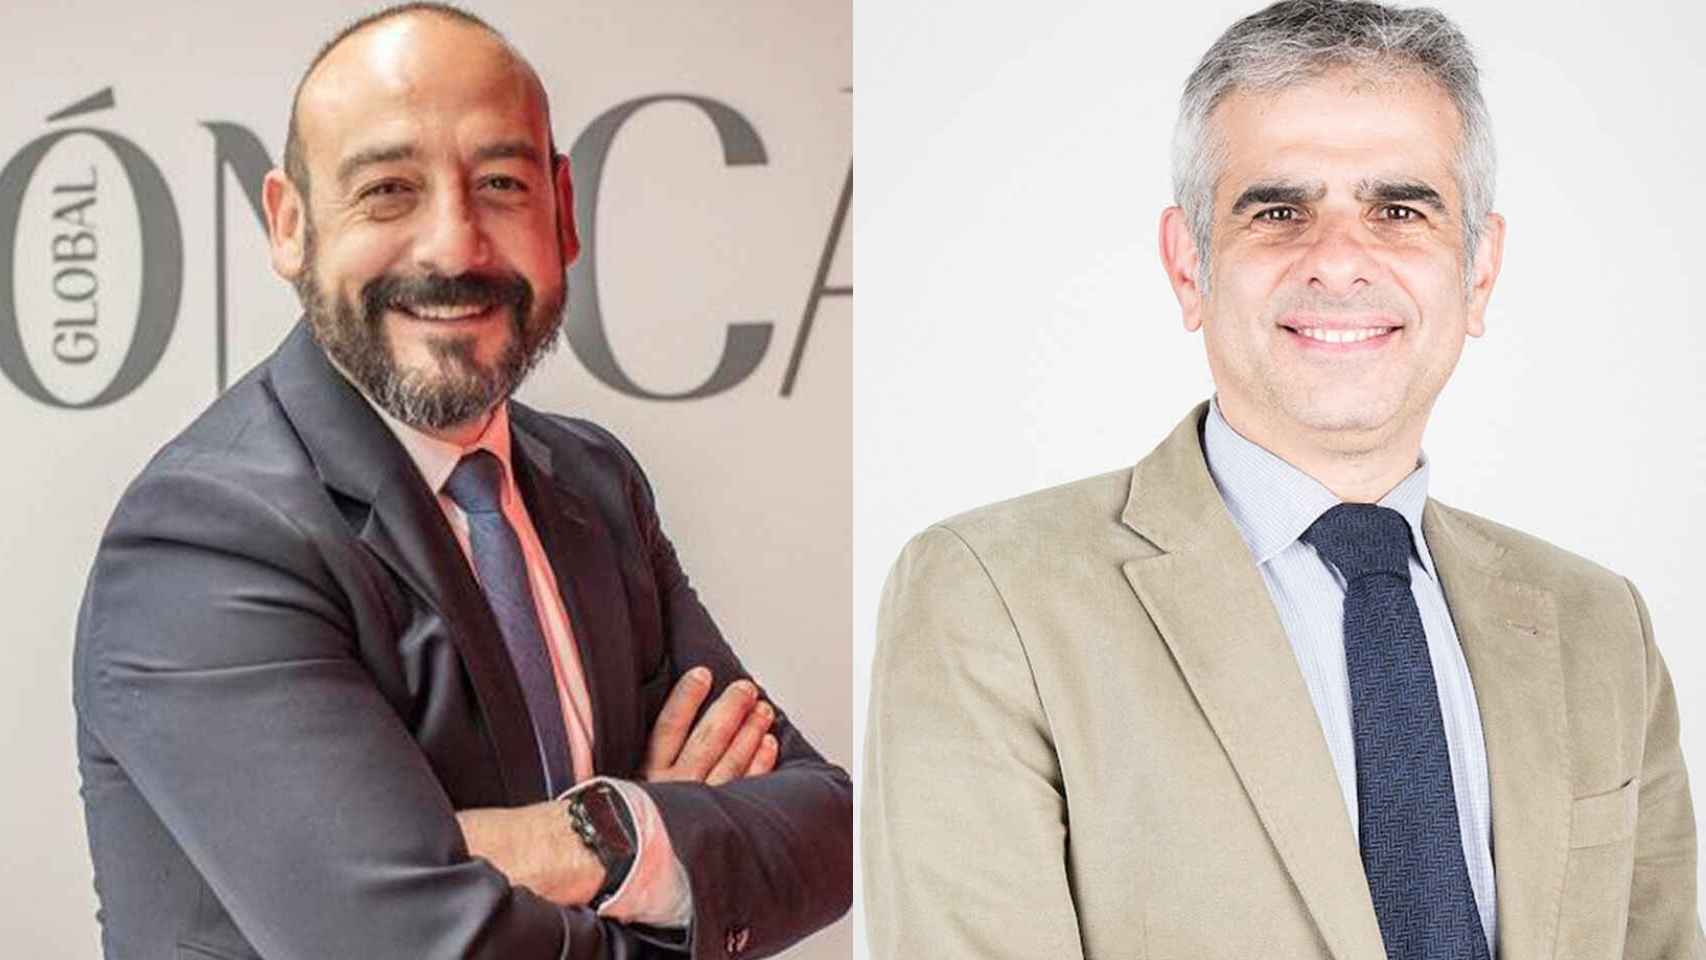 El eurodiputado Jordi Cañas a la izquierda, y el diputado de Cs, Carlos Carrizosa, a la derecha.